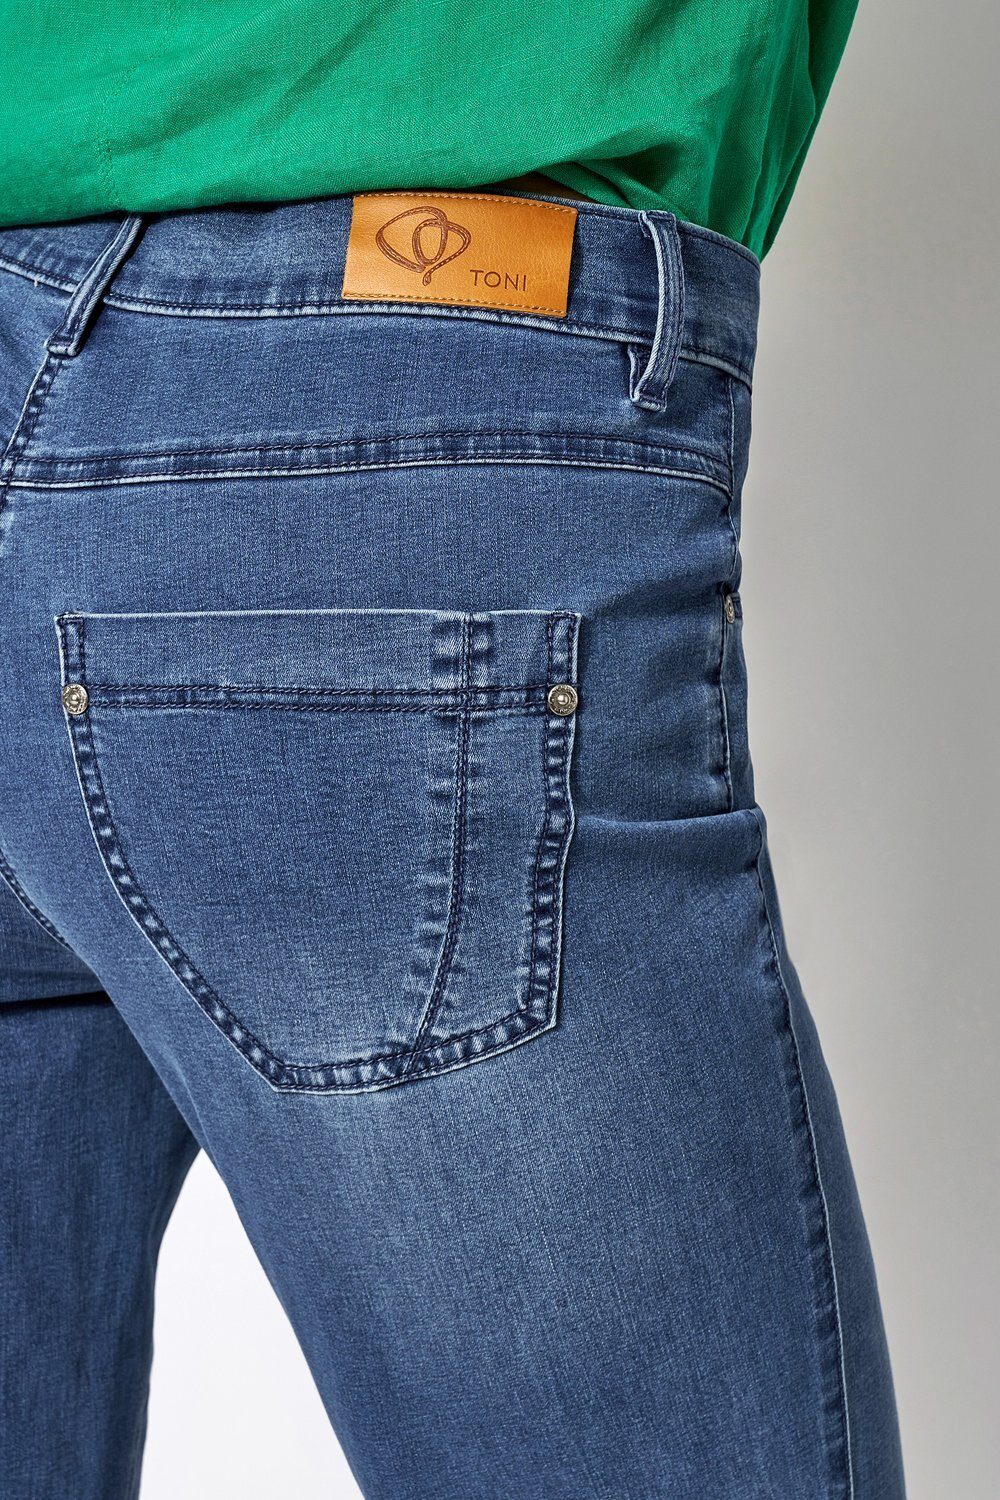 TONI Comfort-fit-Jeans Honey mit Oberschenkelweite entspannter 542 mittelblau 